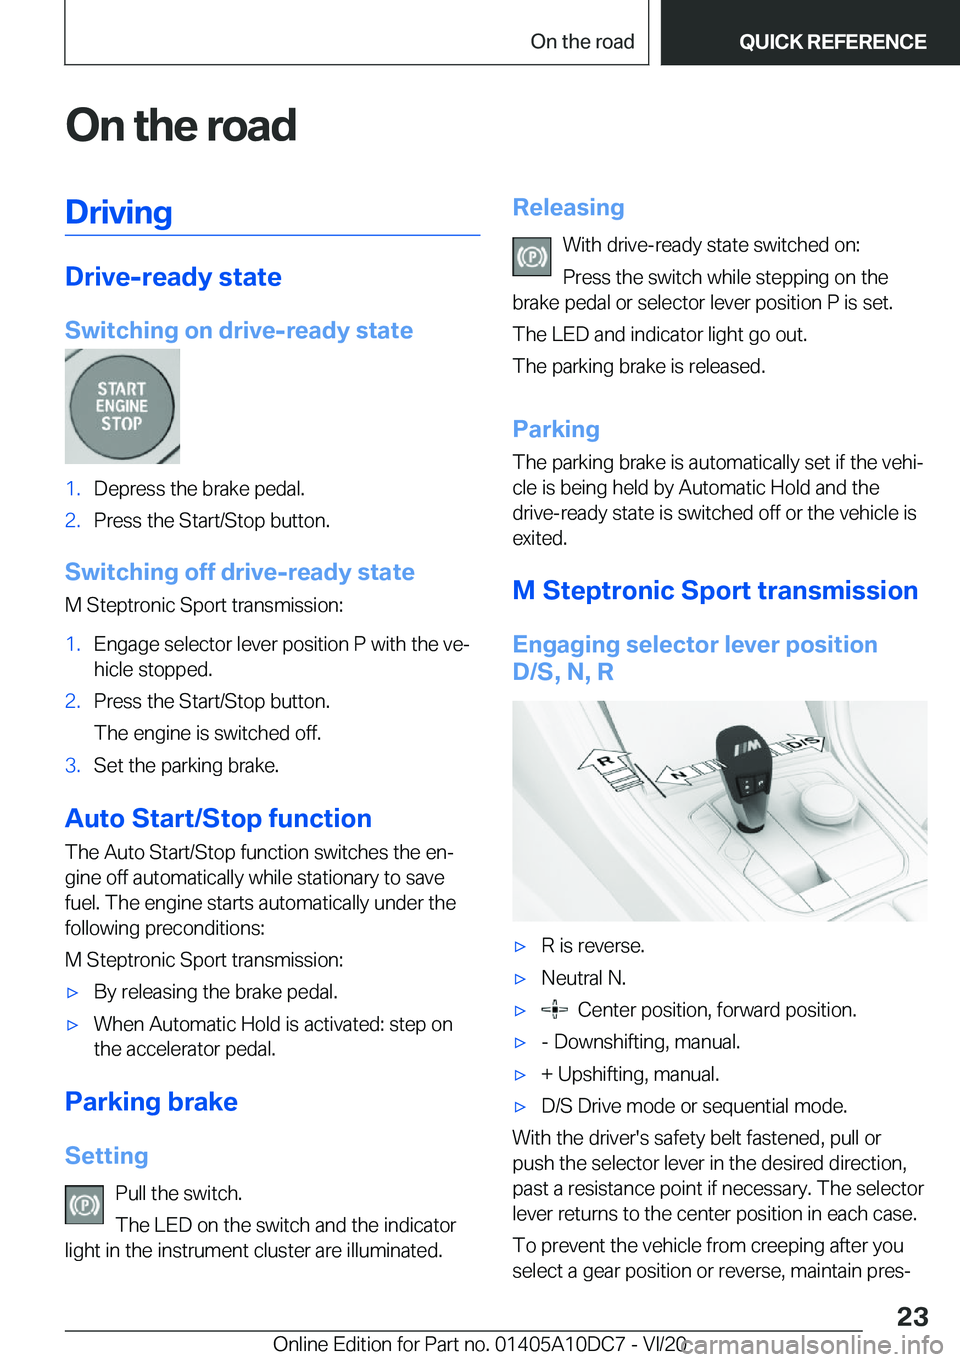 BMW X5M 2021 Owners Manual �O�n��t�h�e��r�o�a�d�D�r�i�v�i�n�g
�D�r�i�v�e�-�r�e�a�d�y��s�t�a�t�e
�S�w�i�t�c�h�i�n�g��o�n��d�r�i�v�e�-�r�e�a�d�y��s�t�a�t�e
�1�.�D�e�p�r�e�s�s��t�h�e��b�r�a�k�e��p�e�d�a�l�.�2�.�P�r�e�s�s�